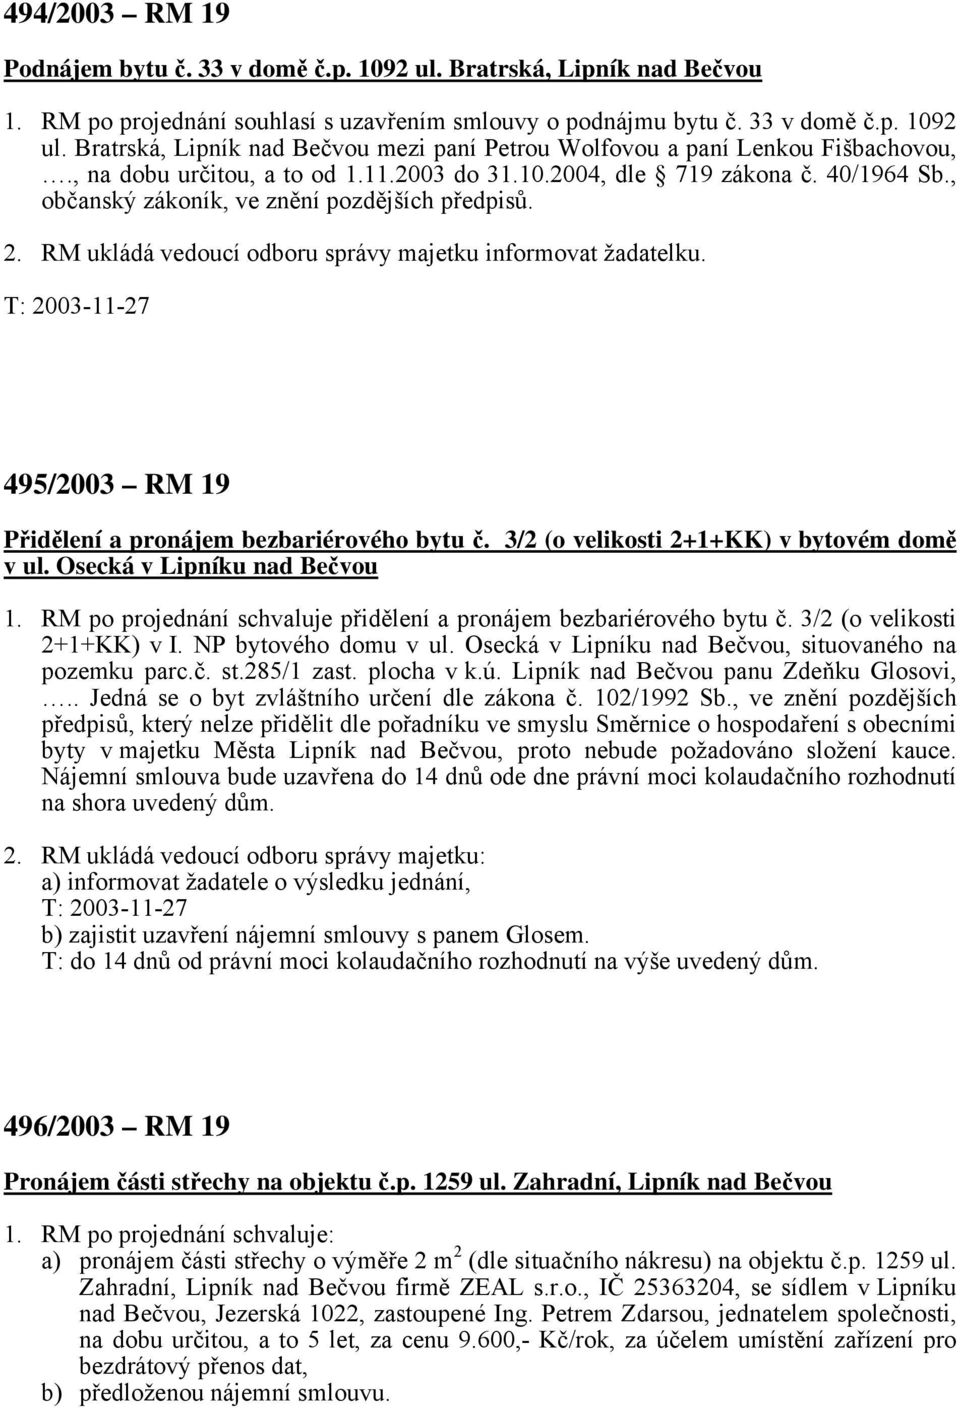 495/2003 RM 19 Přidělení a pronájem bezbariérového bytu č. 3/2 (o velikosti 2+1+KK) v bytovém domě v ul. Osecká v Lipníku nad Bečvou 1.